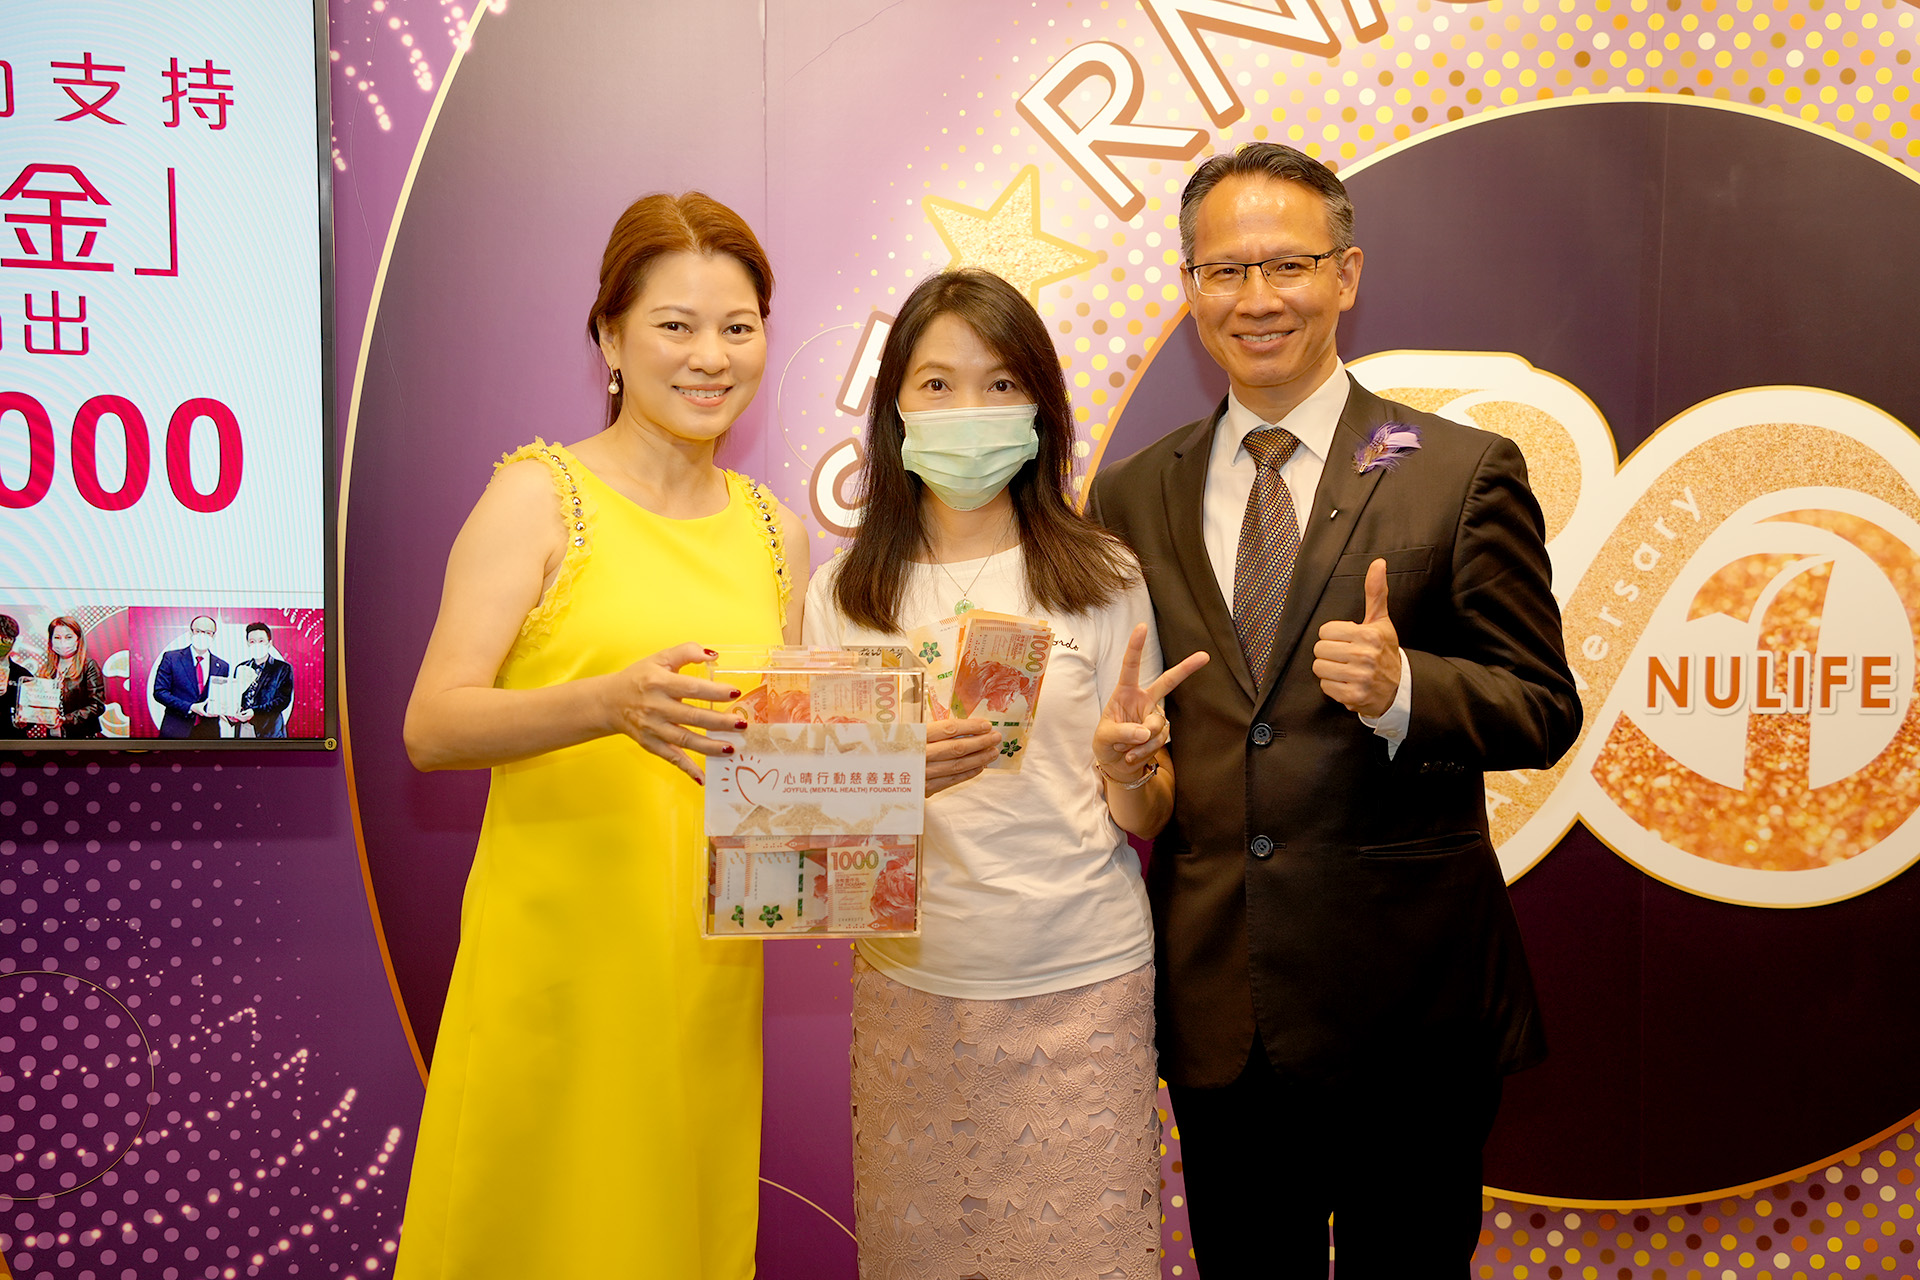 恭賀從葉碧珊女士星級百萬富翁遊戲贏取HK$10,000獎金並與公司合共捐助HK$4000予「心晴行動慈善基金」